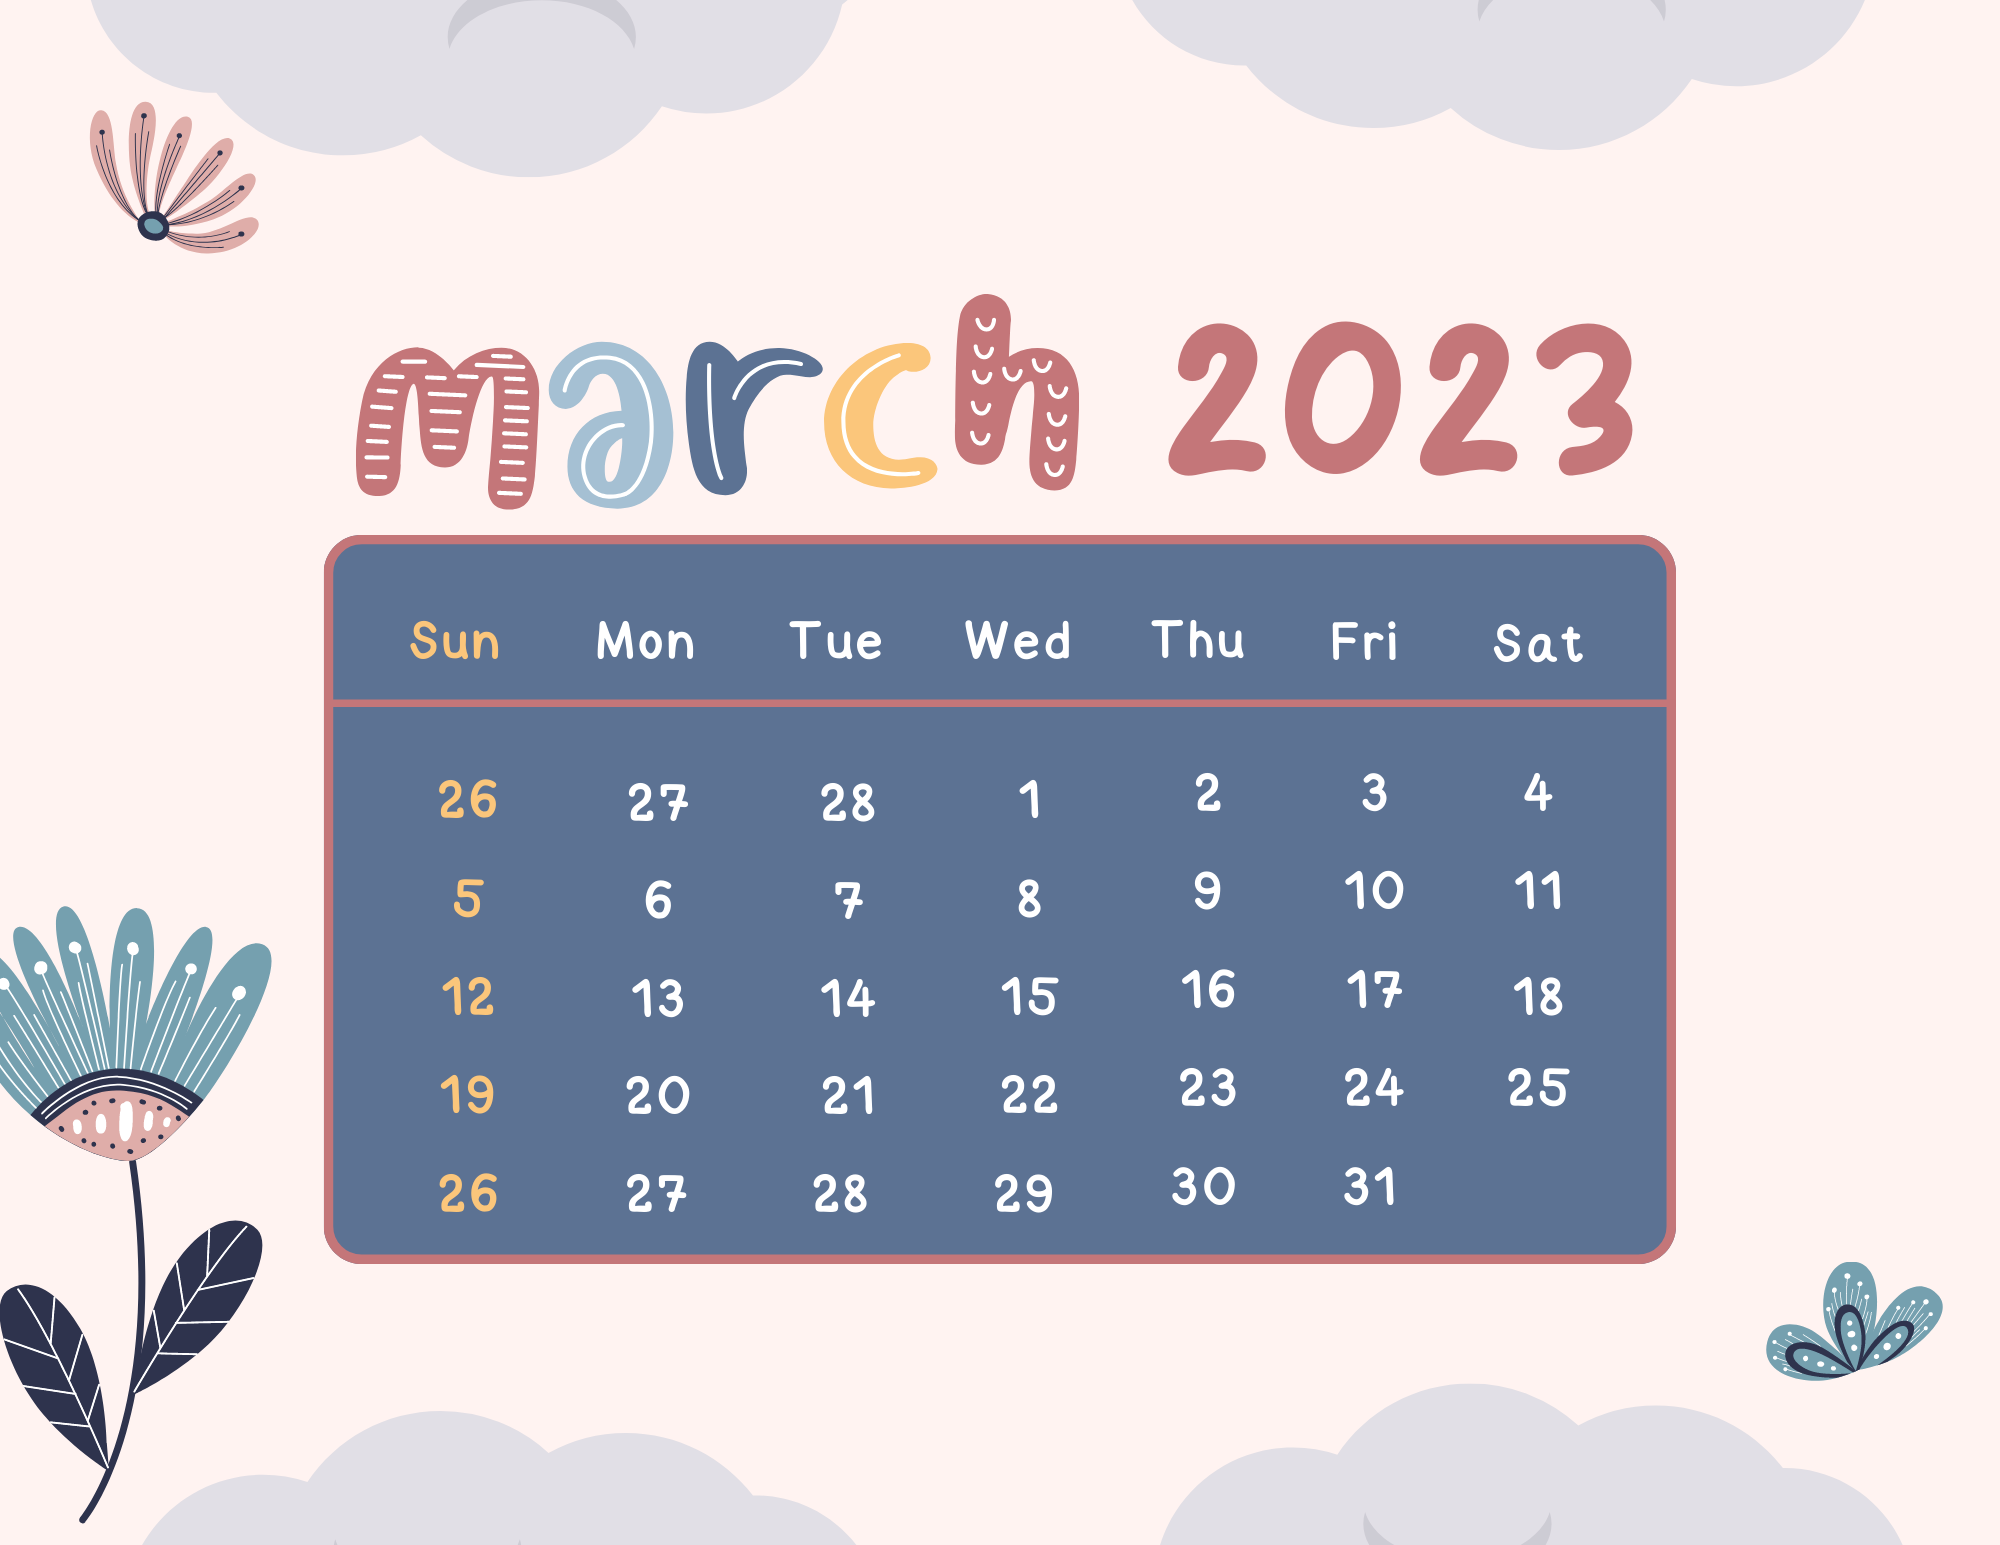 March 2023 Calendar 2